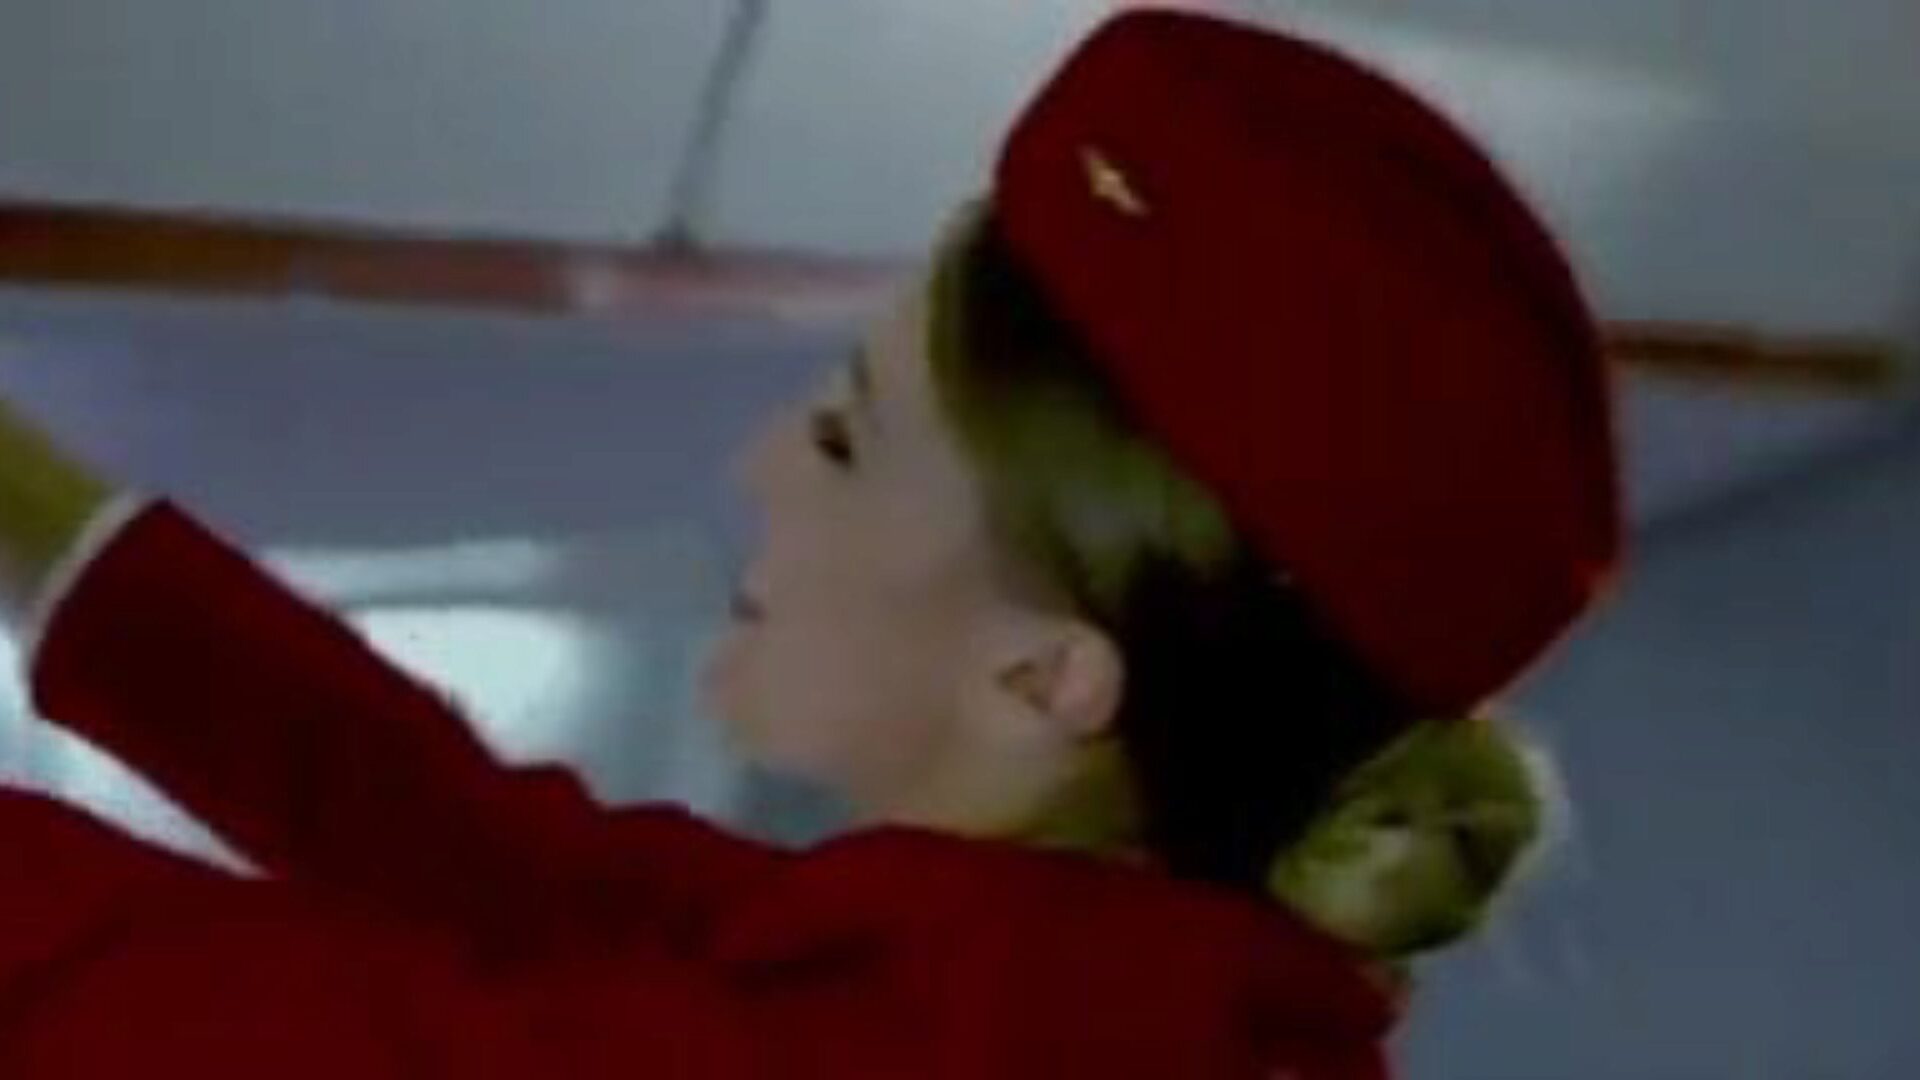 第2部分性航空公司空姐空姐尼龙...观看第2部分性航空公司空姐空姐尼龙丝袜在Xhamster上的剪辑-免费的xnx移动和Twitter性色情管剪辑的终极存档